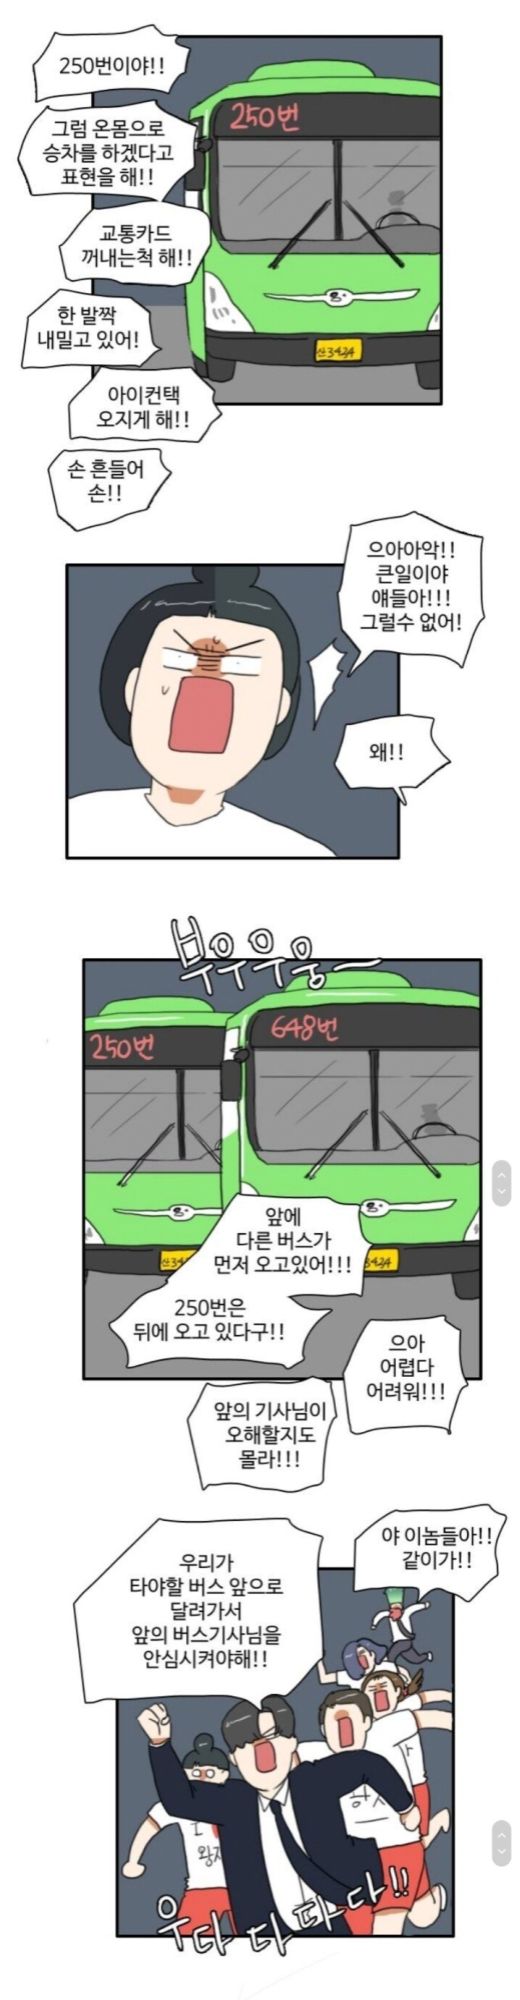 경기도에서 버스를 타는 법2.jpg